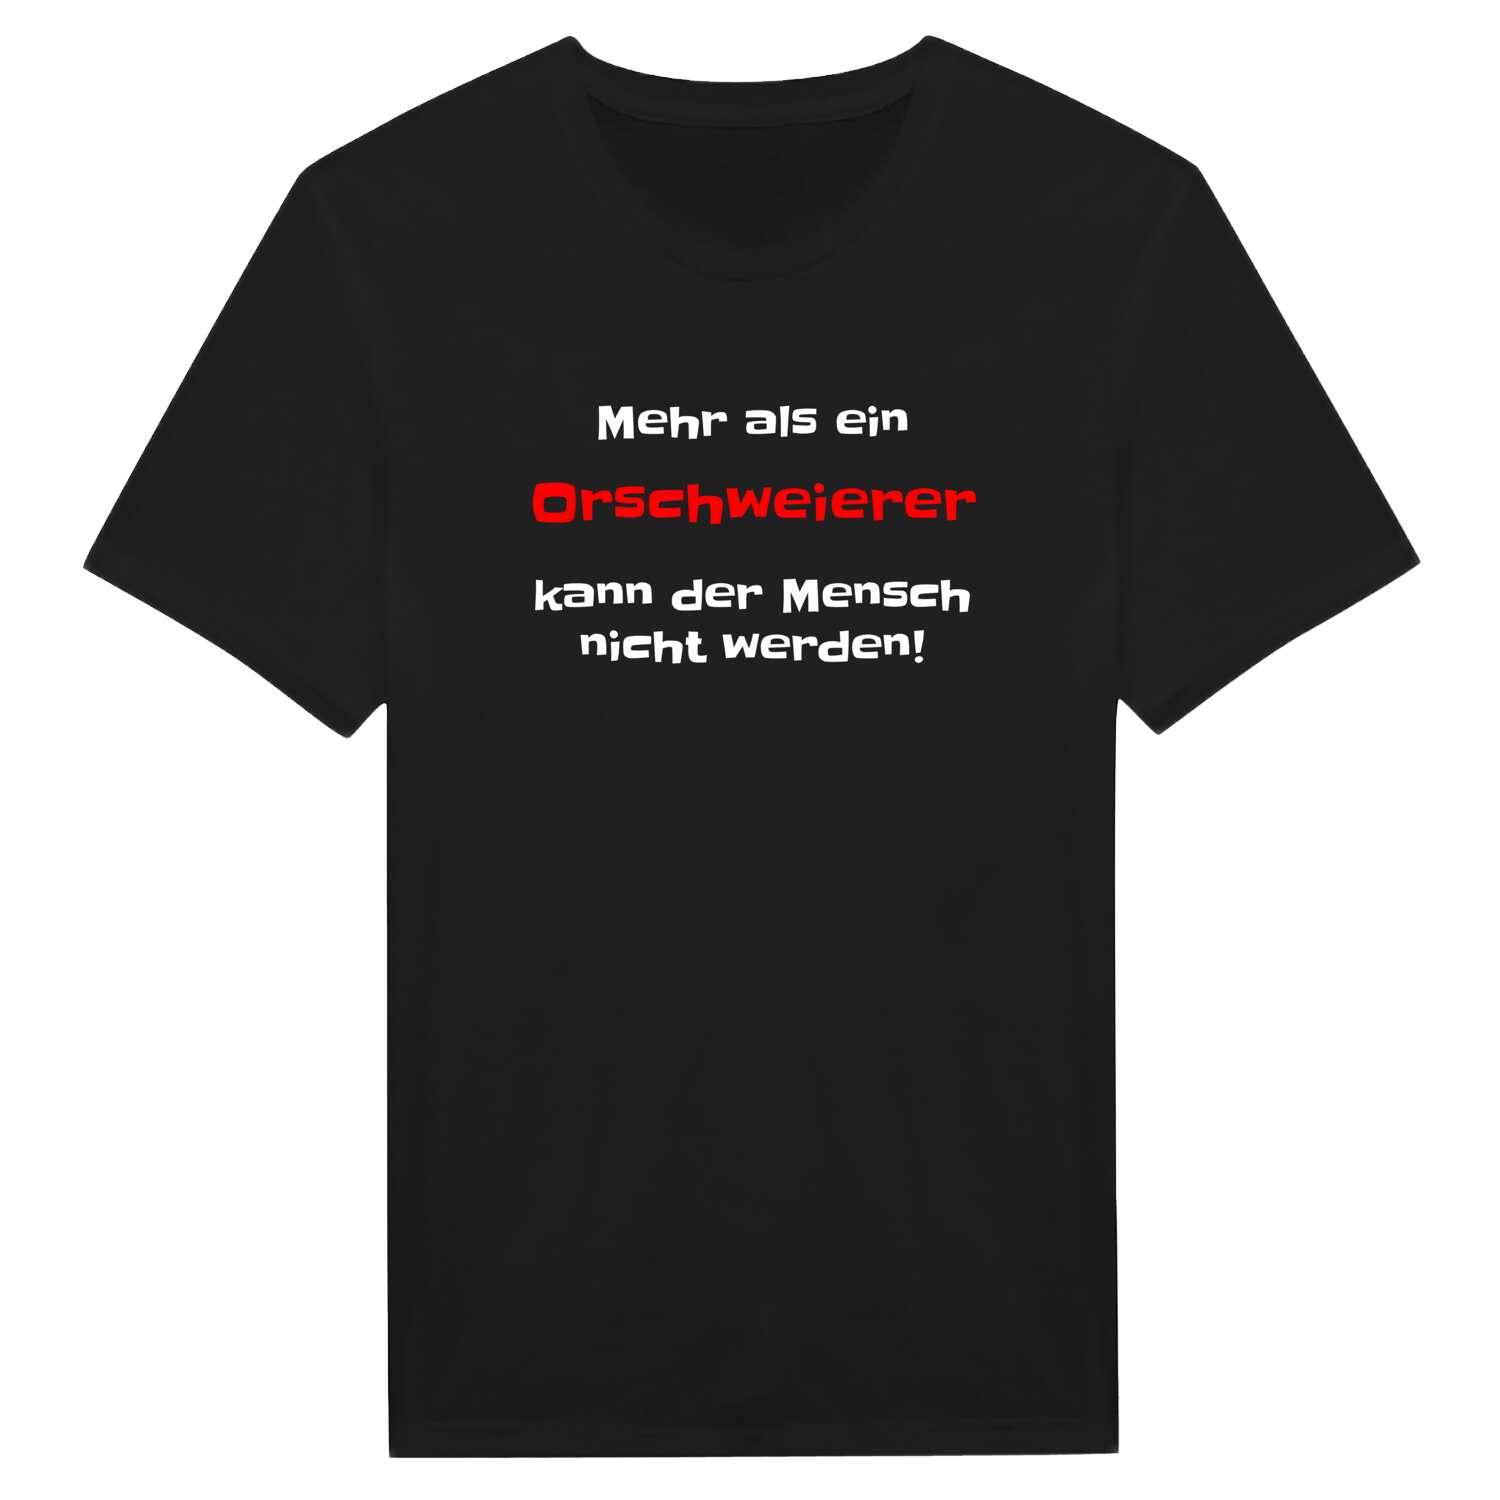 Orschweier T-Shirt »Mehr als ein«